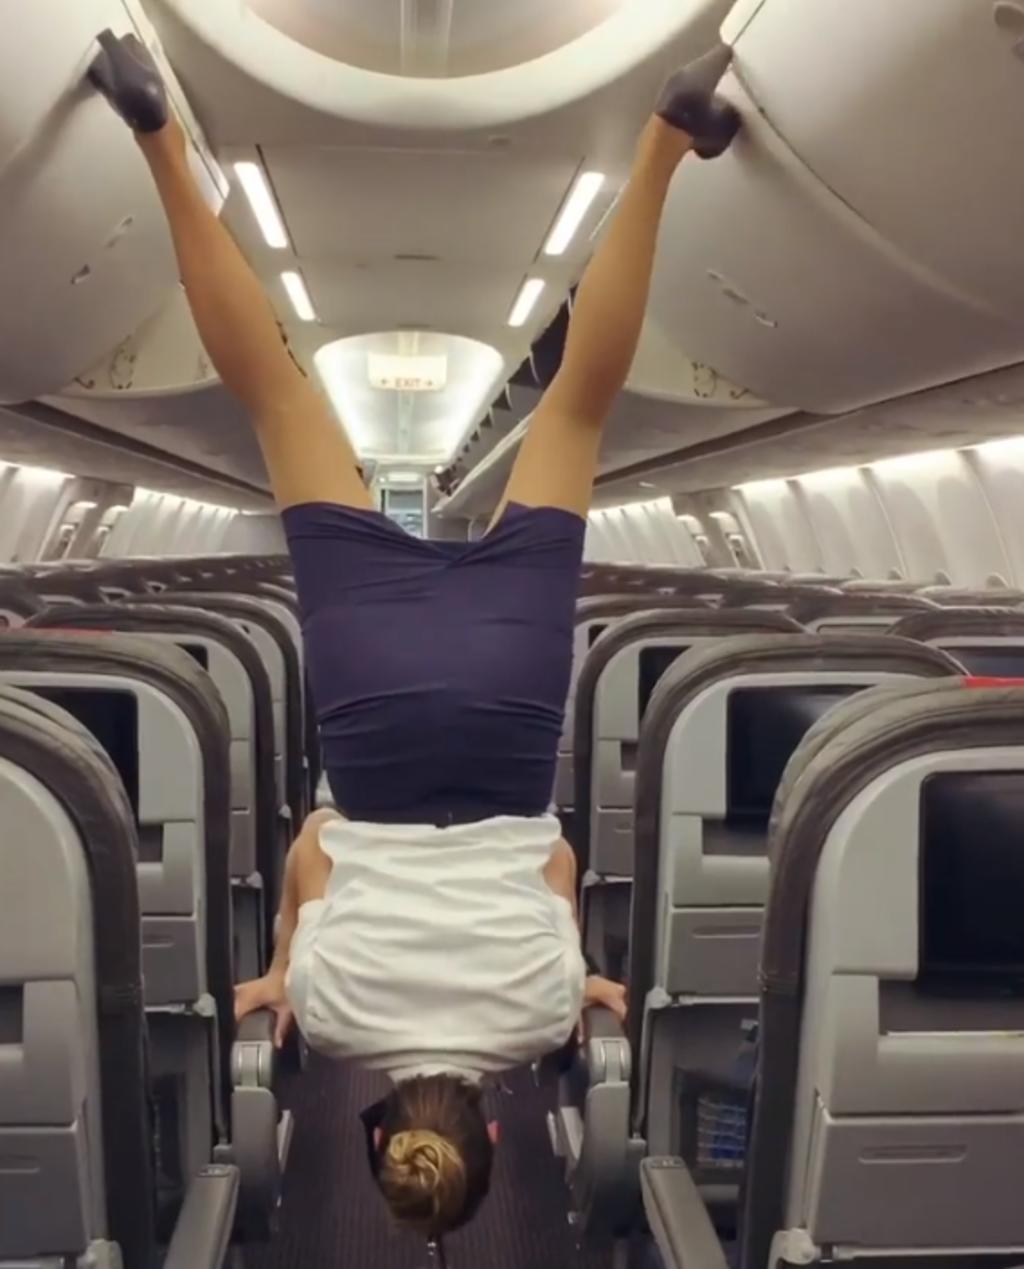 Aeromoza muestra sus habilidades acrobáticas al cerrar compartimientos con sus pies